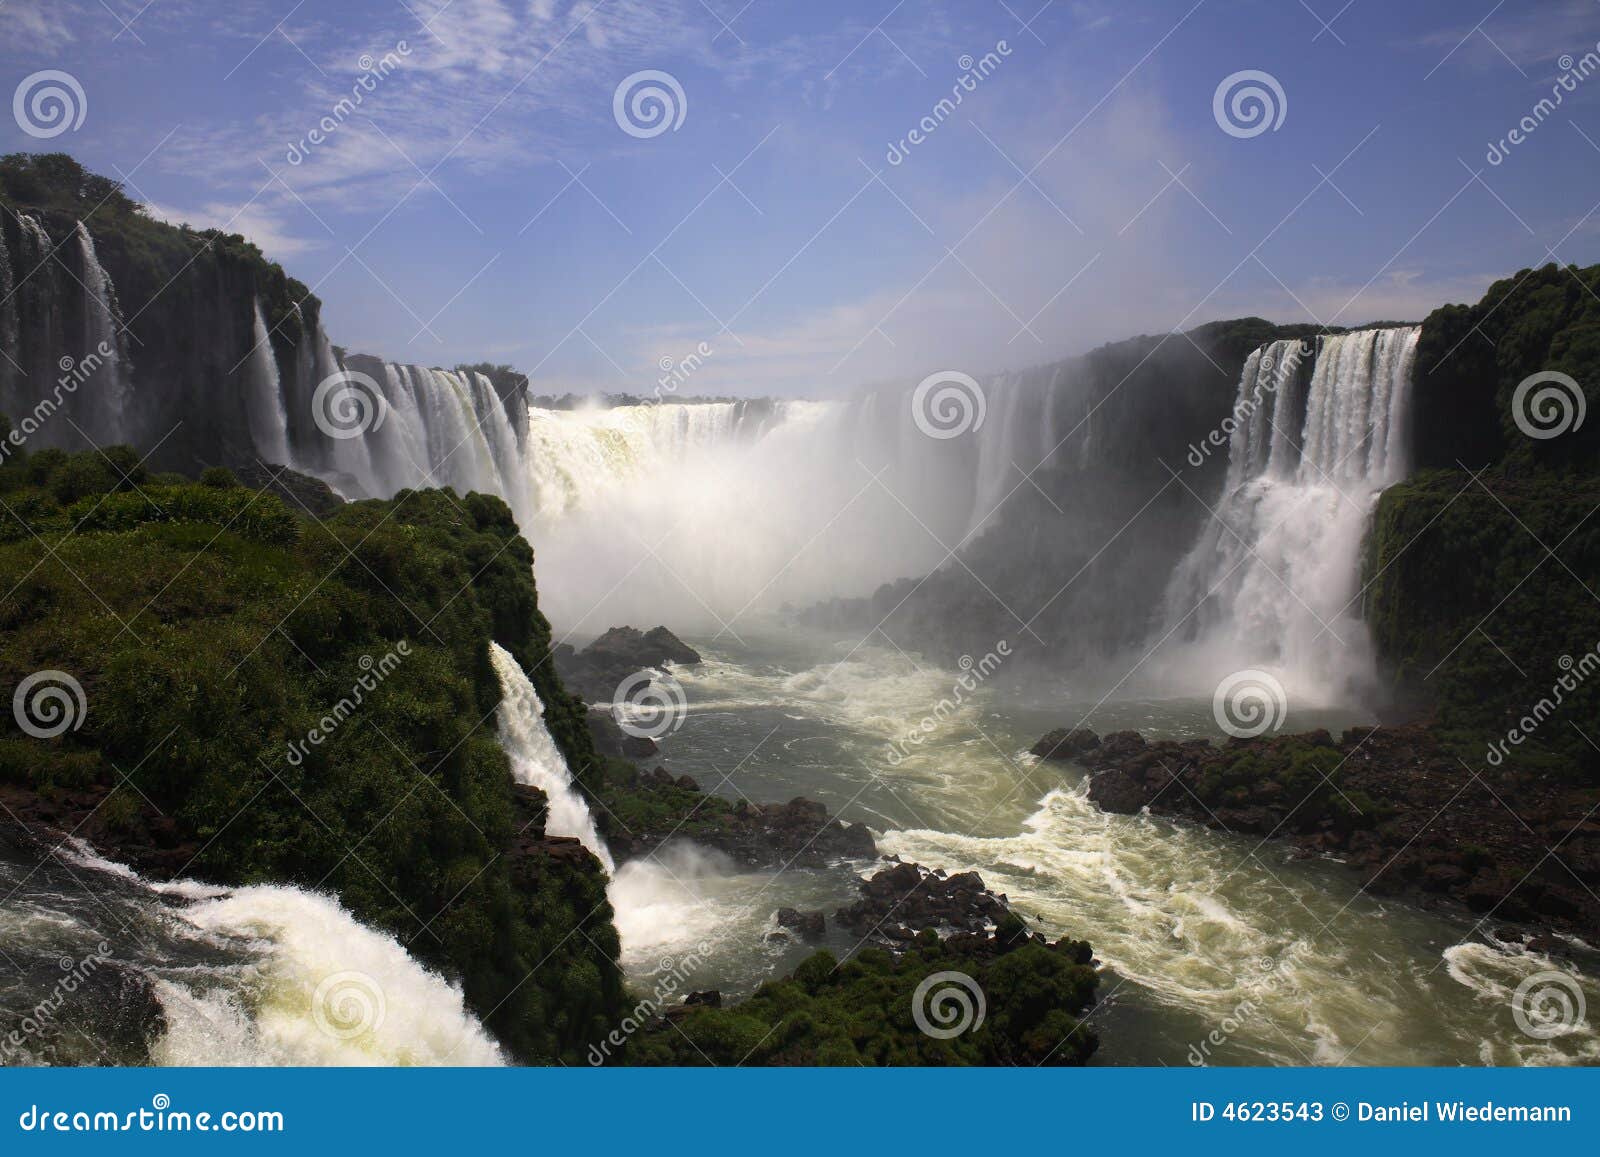 iguassu (iguazu; iguaÃÂ§u) falls - large waterfalls